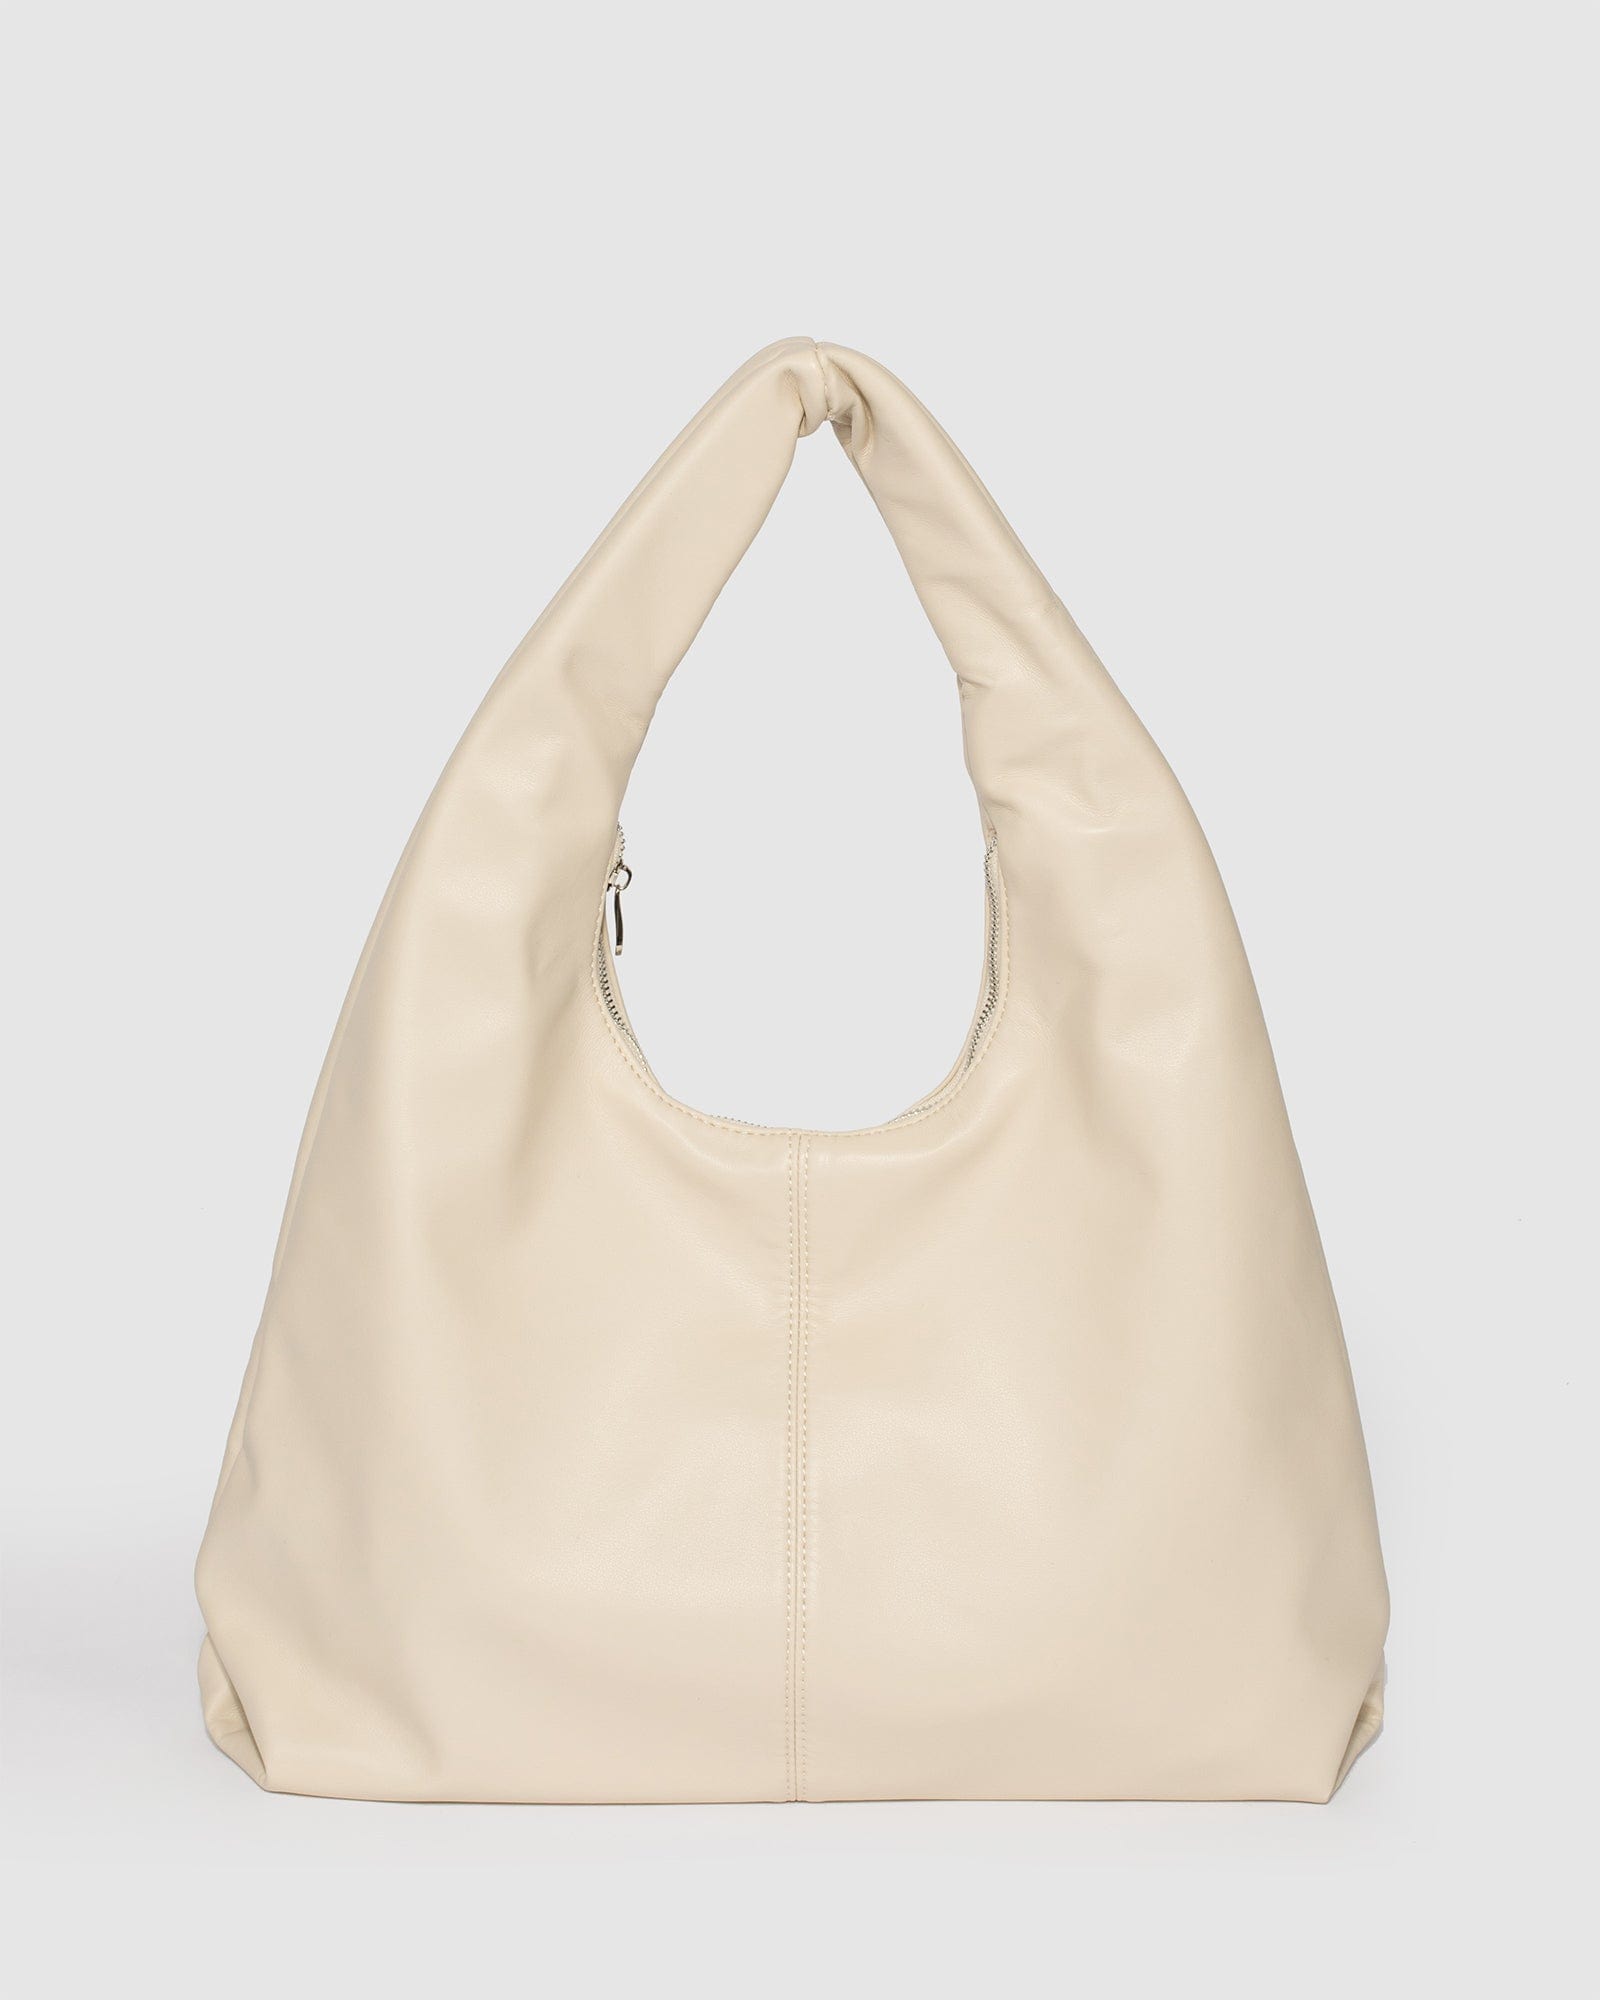 Colour: Crossbody Bag Online – colette by colette hayman